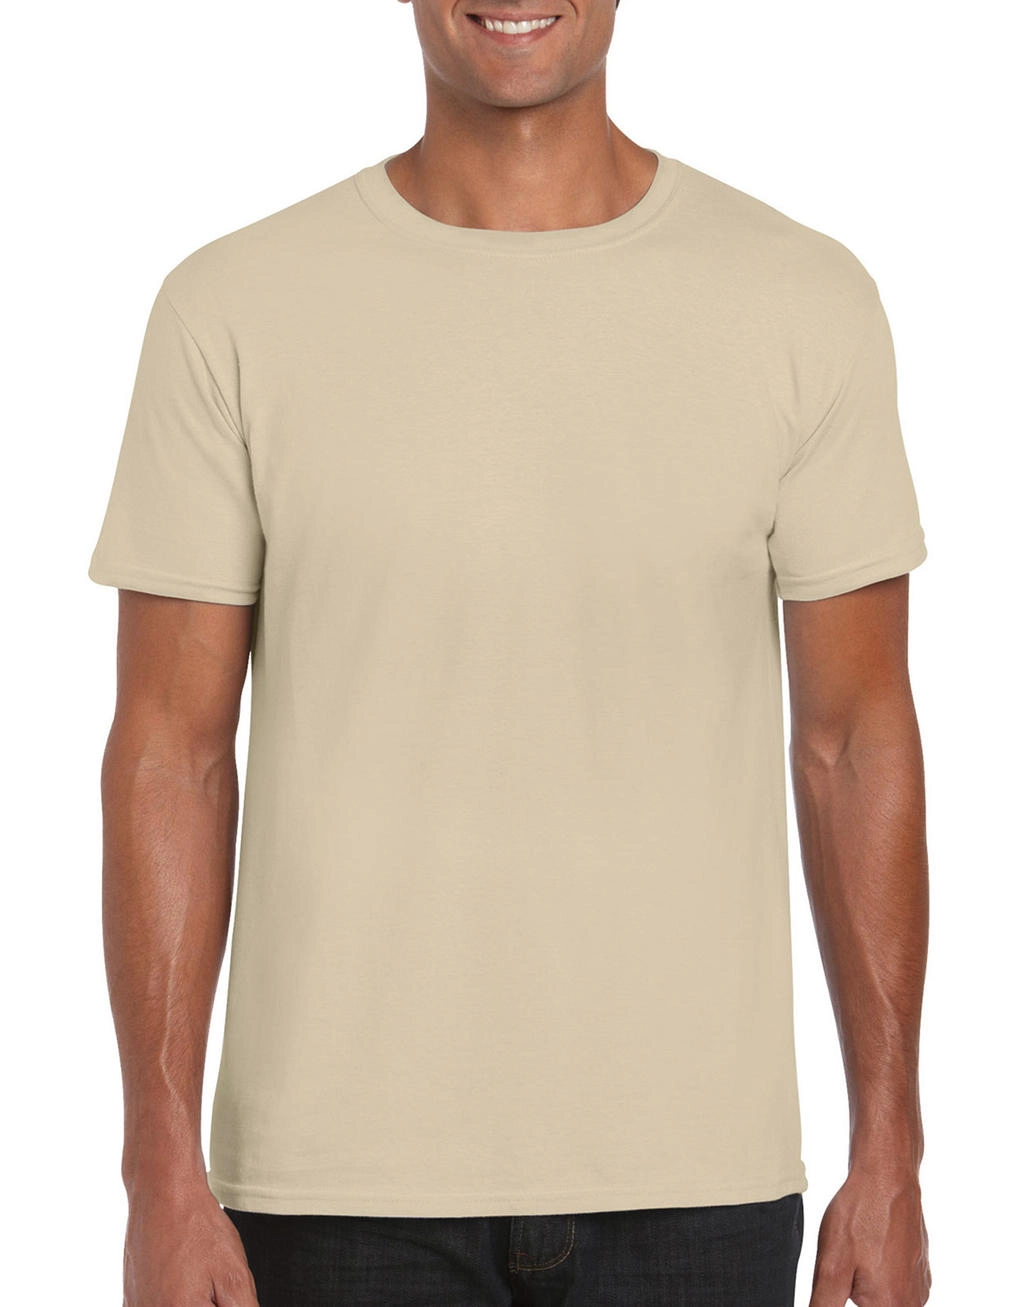 Softstyle® Ring Spun T-Shirt zum Besticken und Bedrucken in der Farbe Sand mit Ihren Logo, Schriftzug oder Motiv.